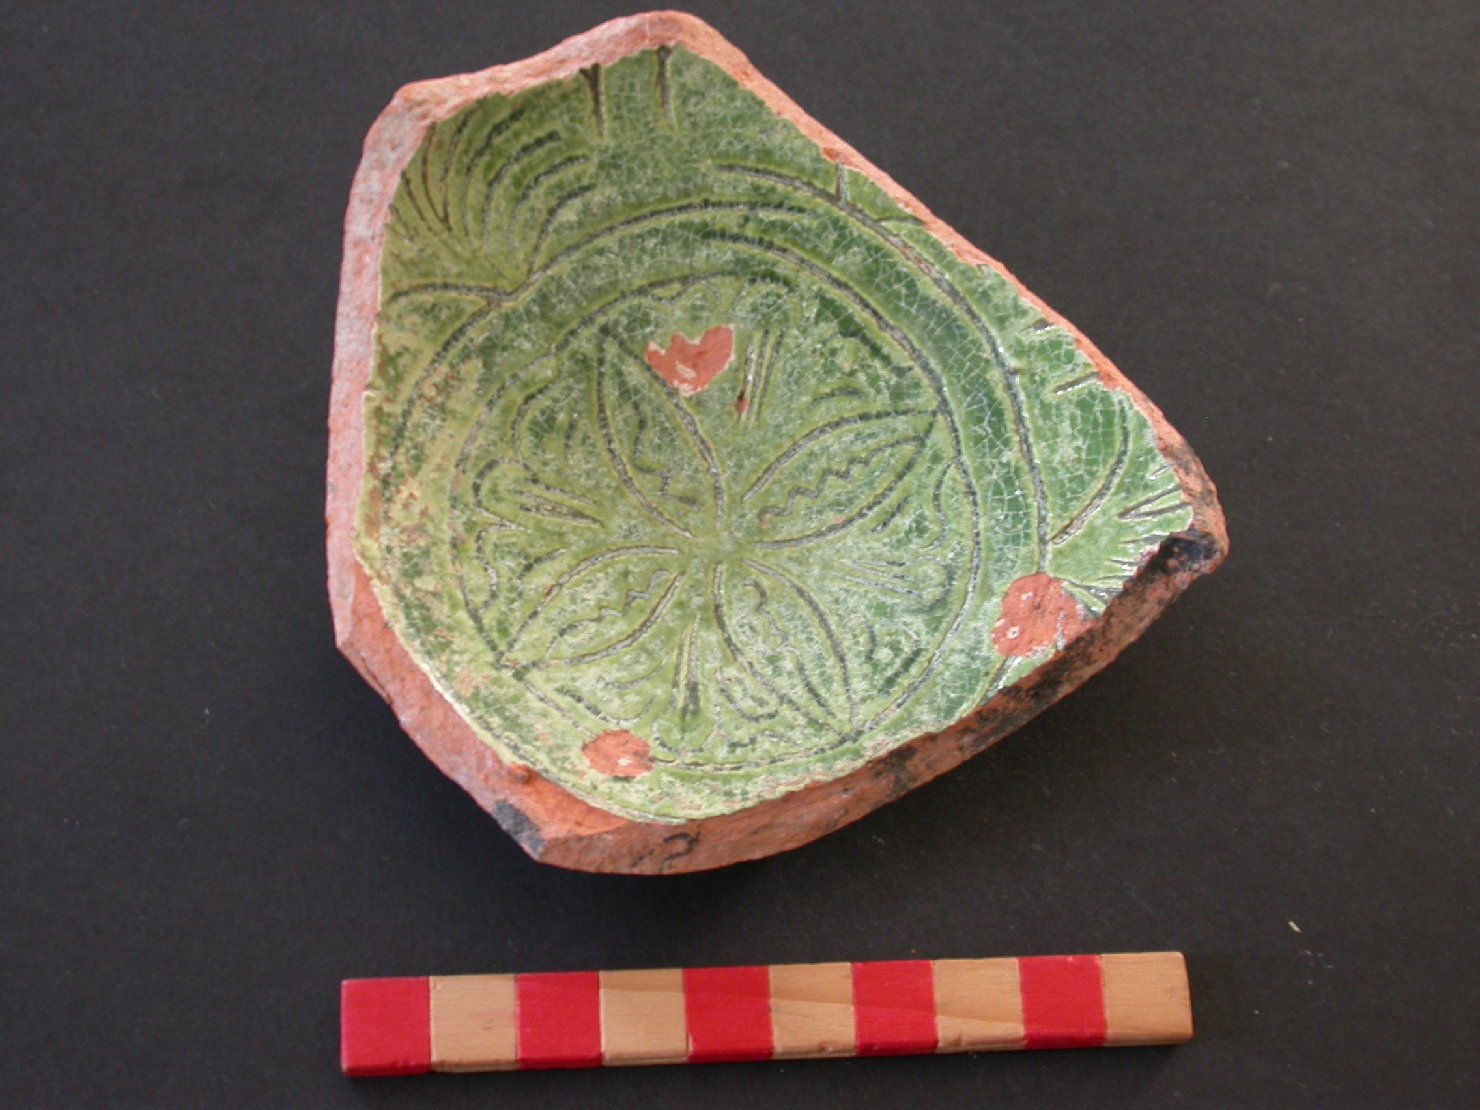 motivi decorativi vegetali a palmette (scodella, frammento) - ambito veneziano (fine/inizio secc. XIV/ XV)